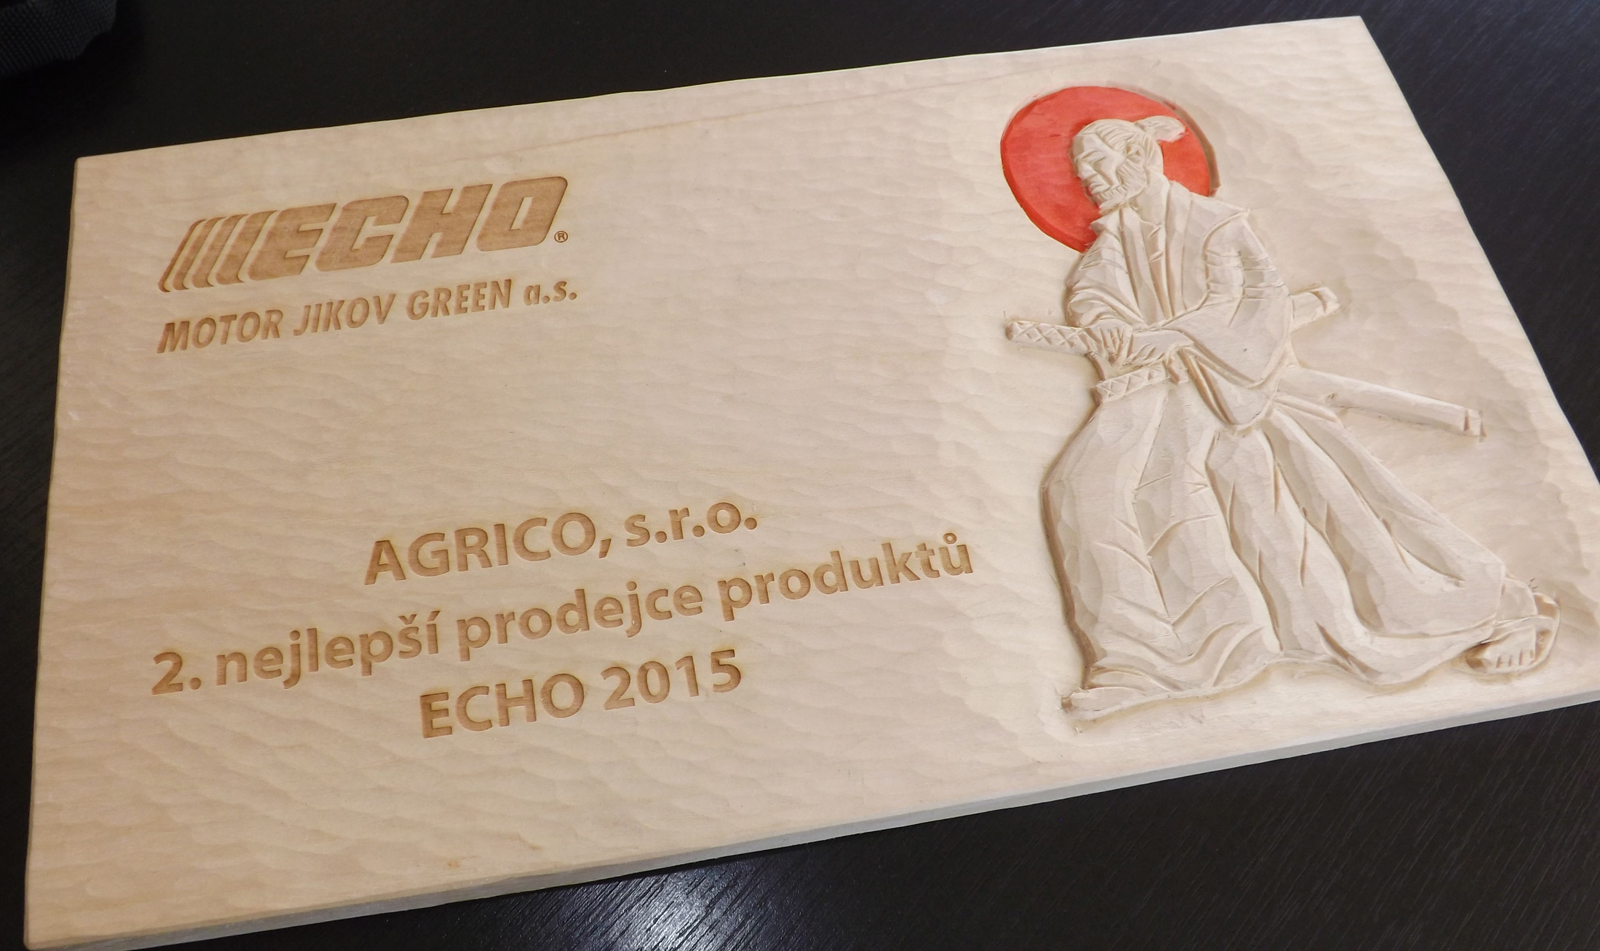 2. nejlepší prodejce produktů ECHO za 2015